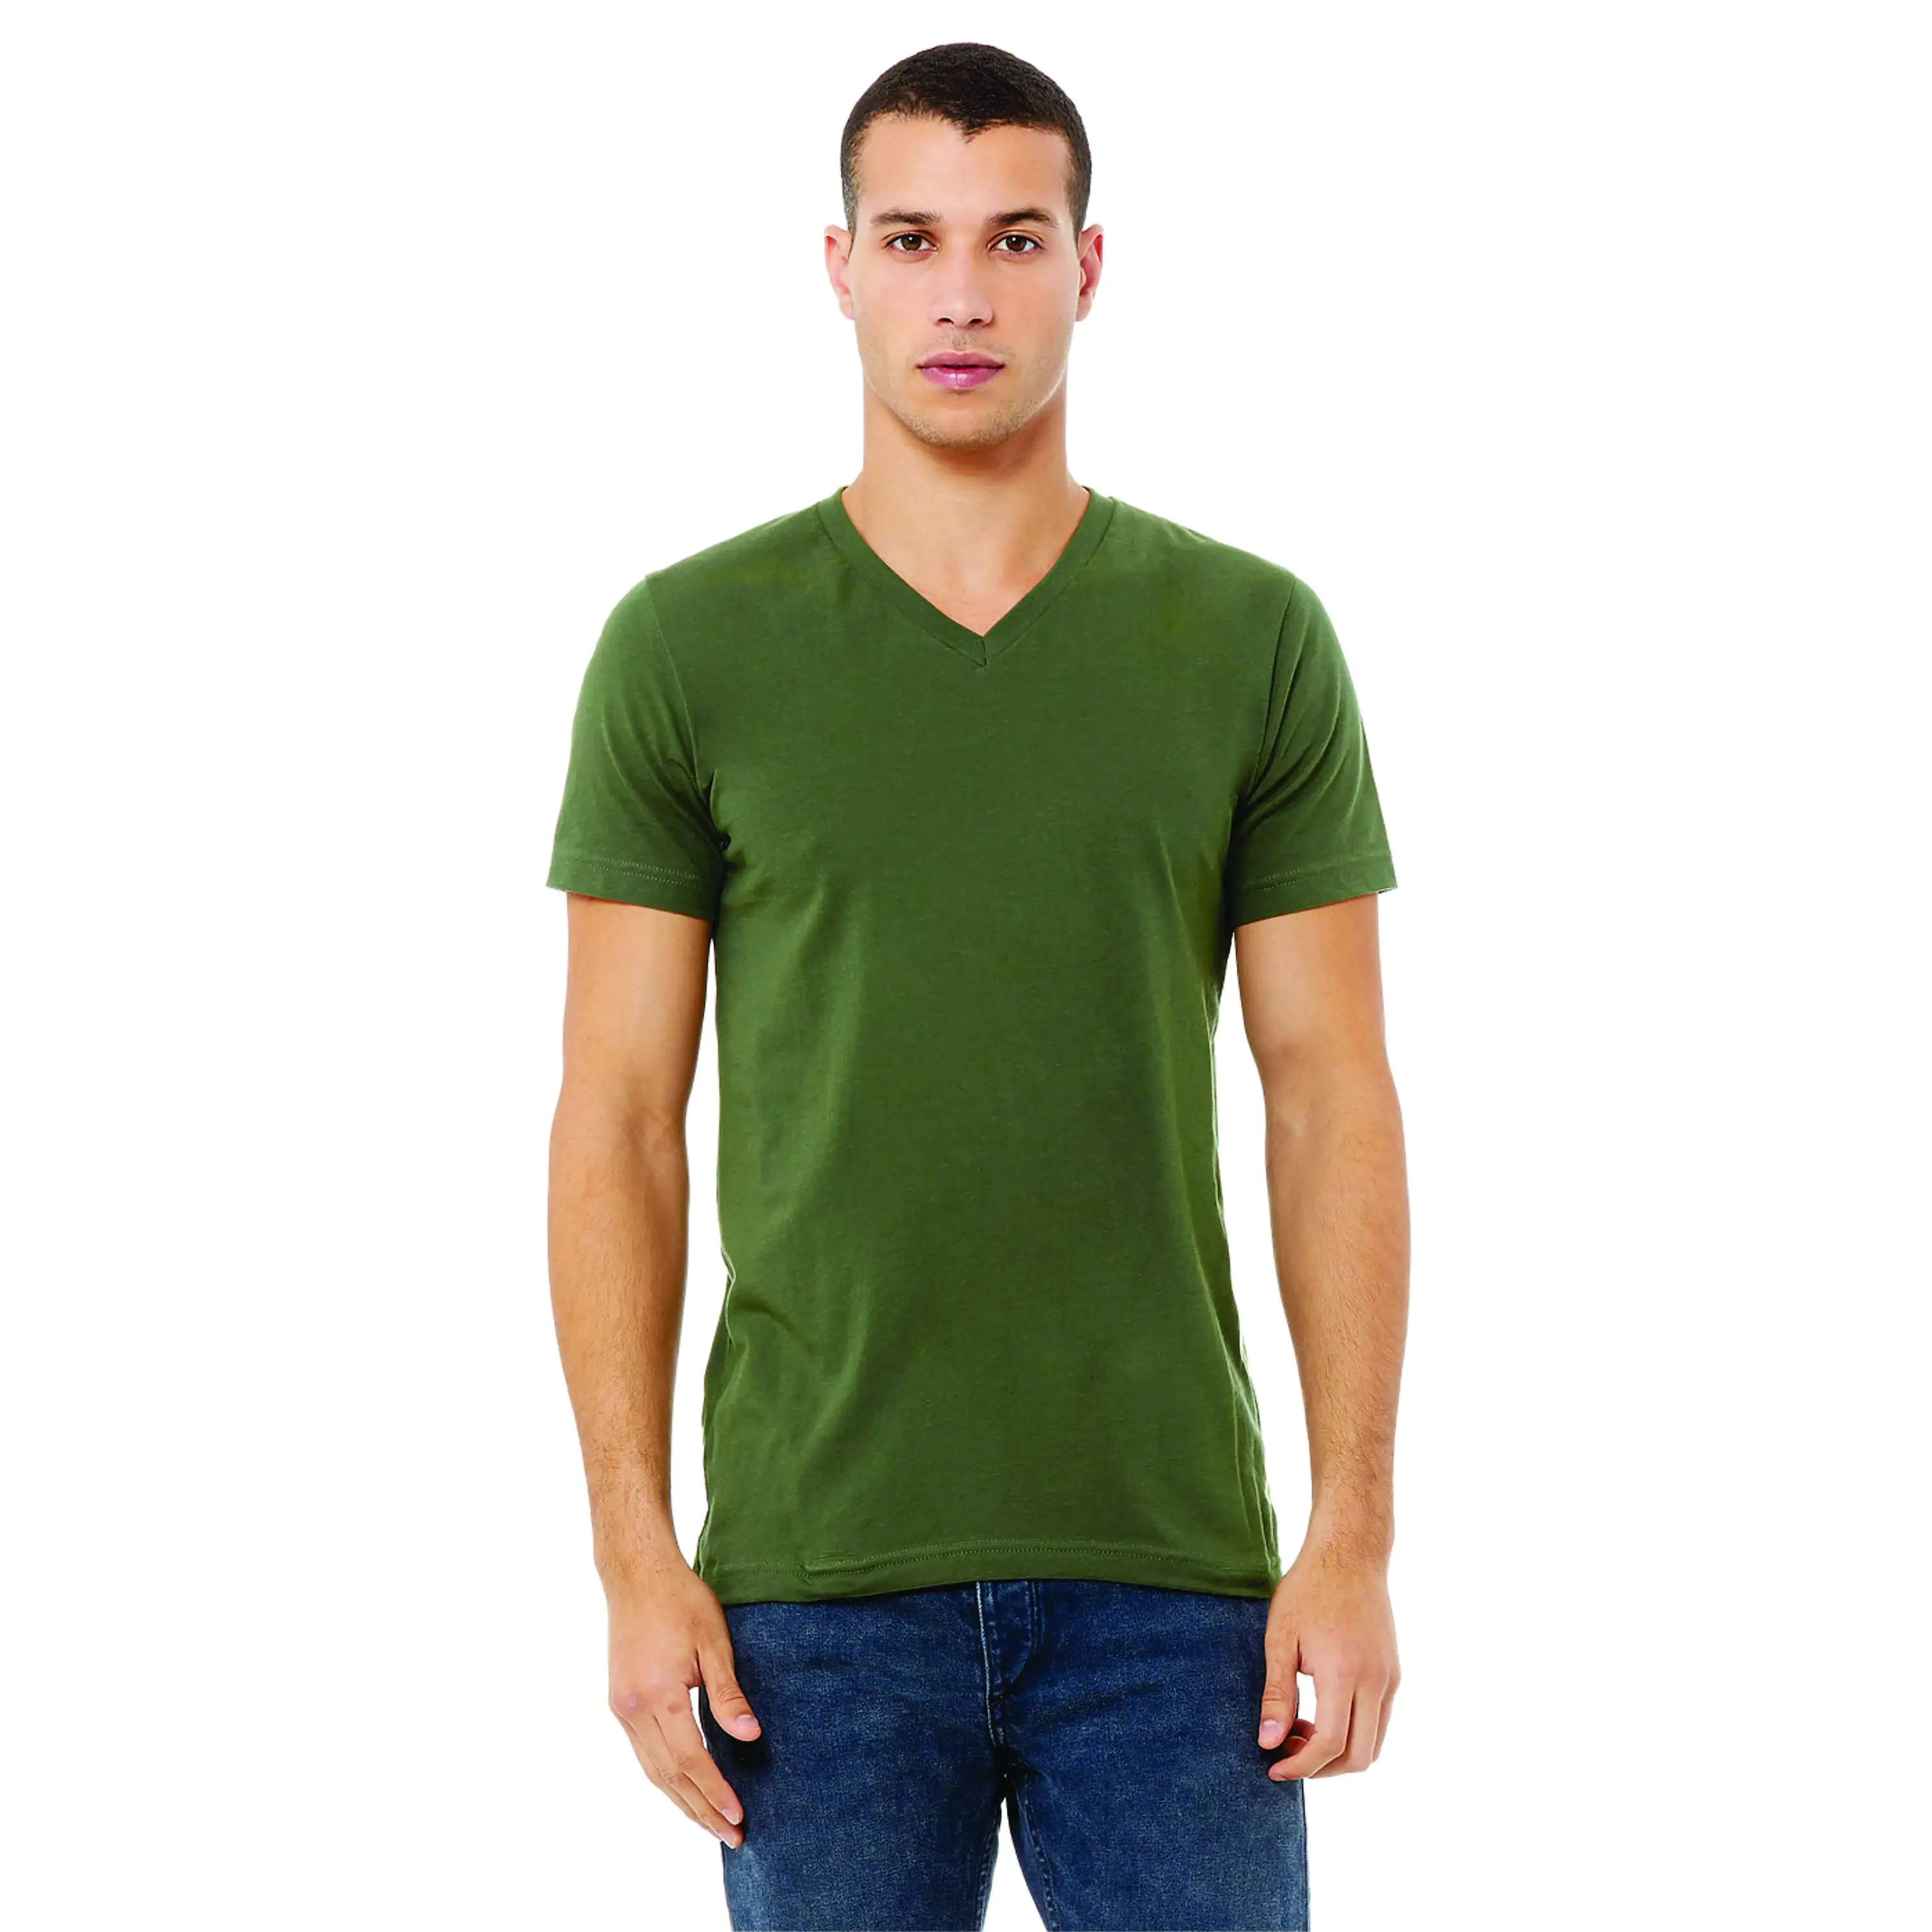 "Camiseta con cuello en V verde militar Essential Jersey: algodón peinado puro 100% Airlume, 32 Single, 4,2 oz, ajuste unisex"